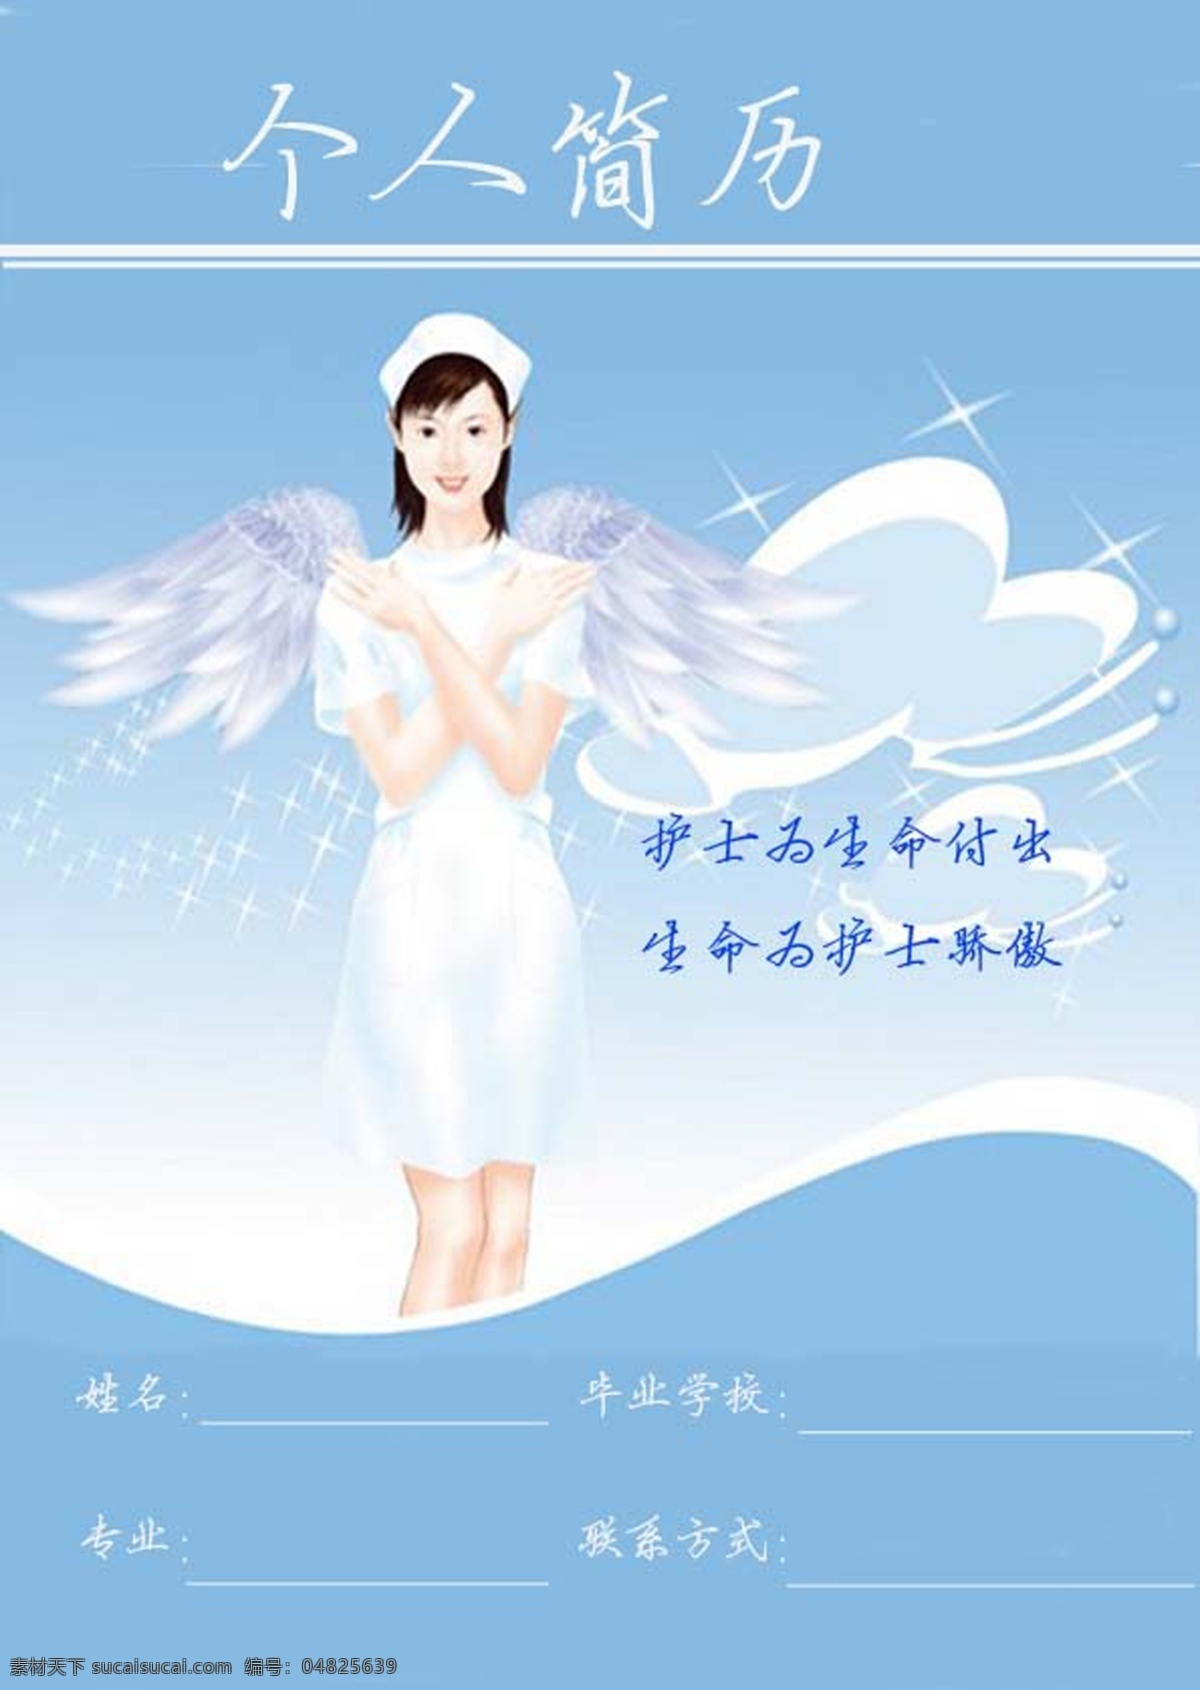 护士 个人简历 封面 模板 a4 淡蓝色 带 翅膀 女孩 为生 命 付出 生命 骄傲 psd源文件